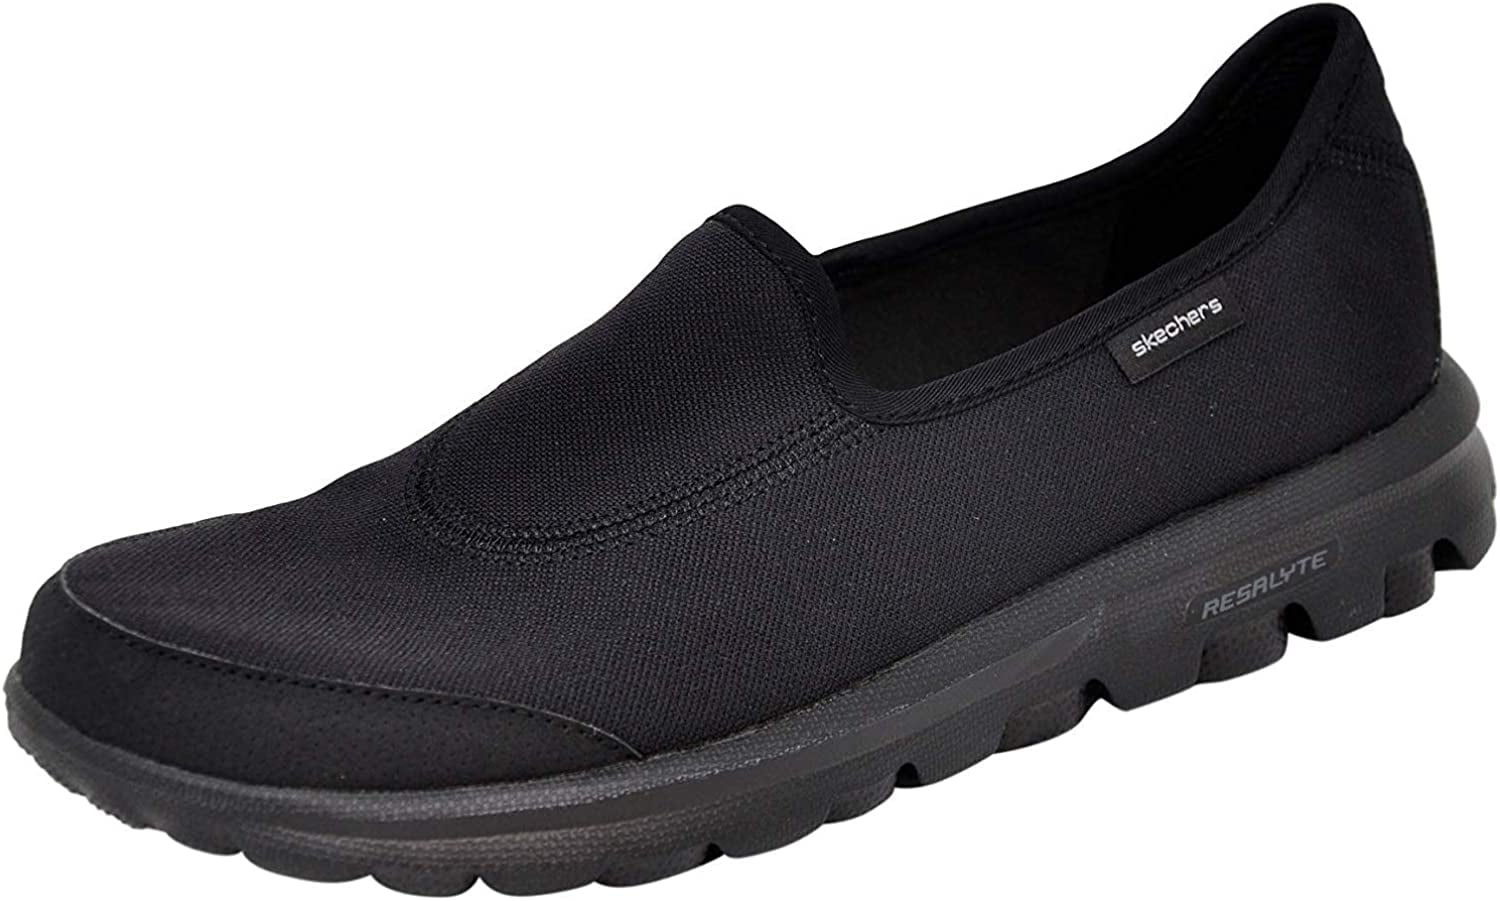 Performance Women's Go Walk Slip-On Walking Shoe 7.5 Wide Black/Charcoal